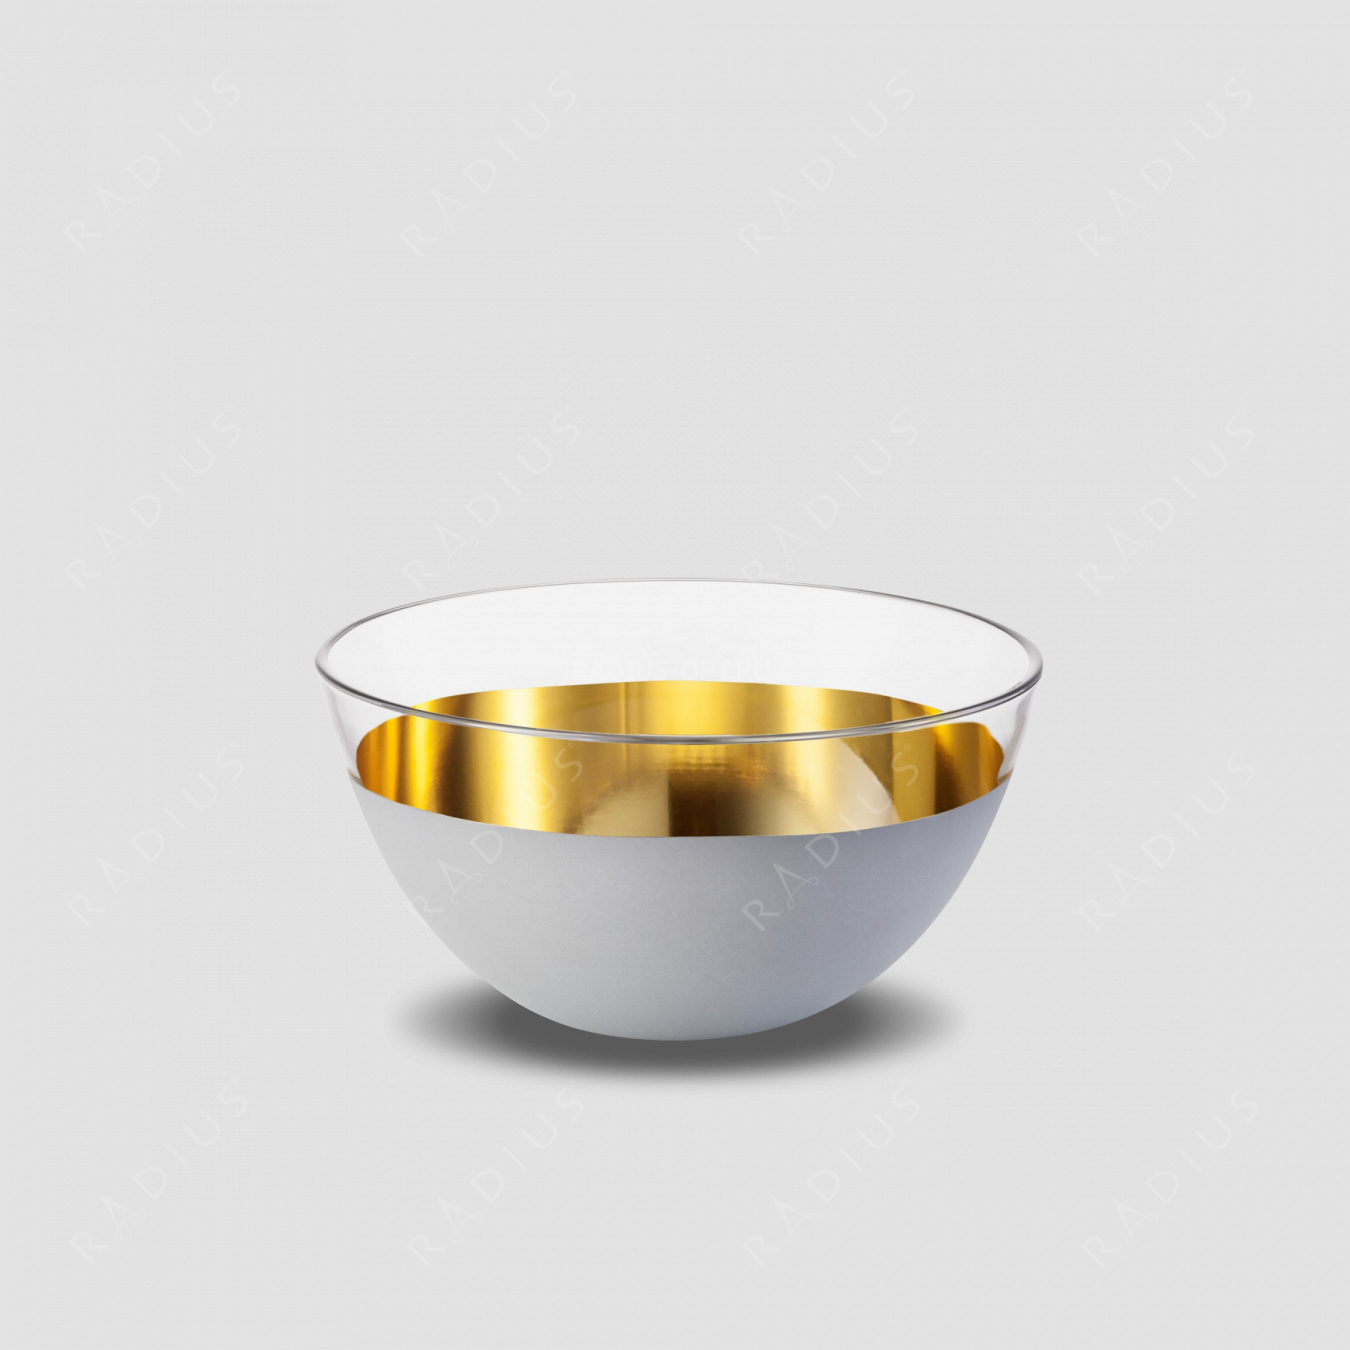 Чаша глубокая Weiss, диаметр: 24 см, материал: бессвинцовый хрусталь, цвет: белый/золото, серия Cosmo, EISCH, Германия